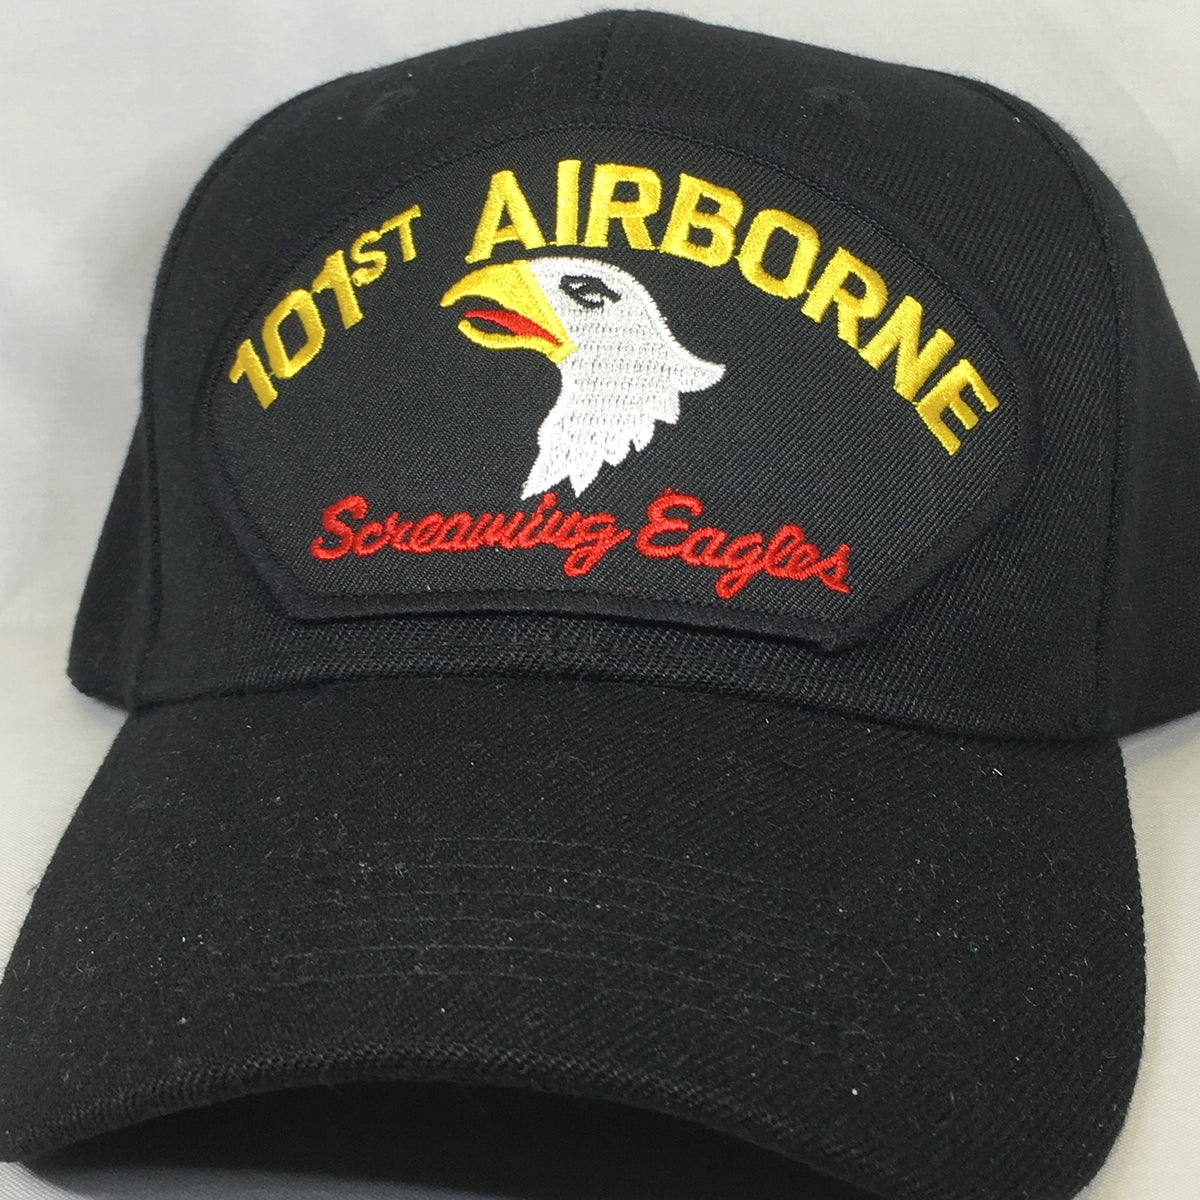 101st Airborne Screaming Eagles Cap